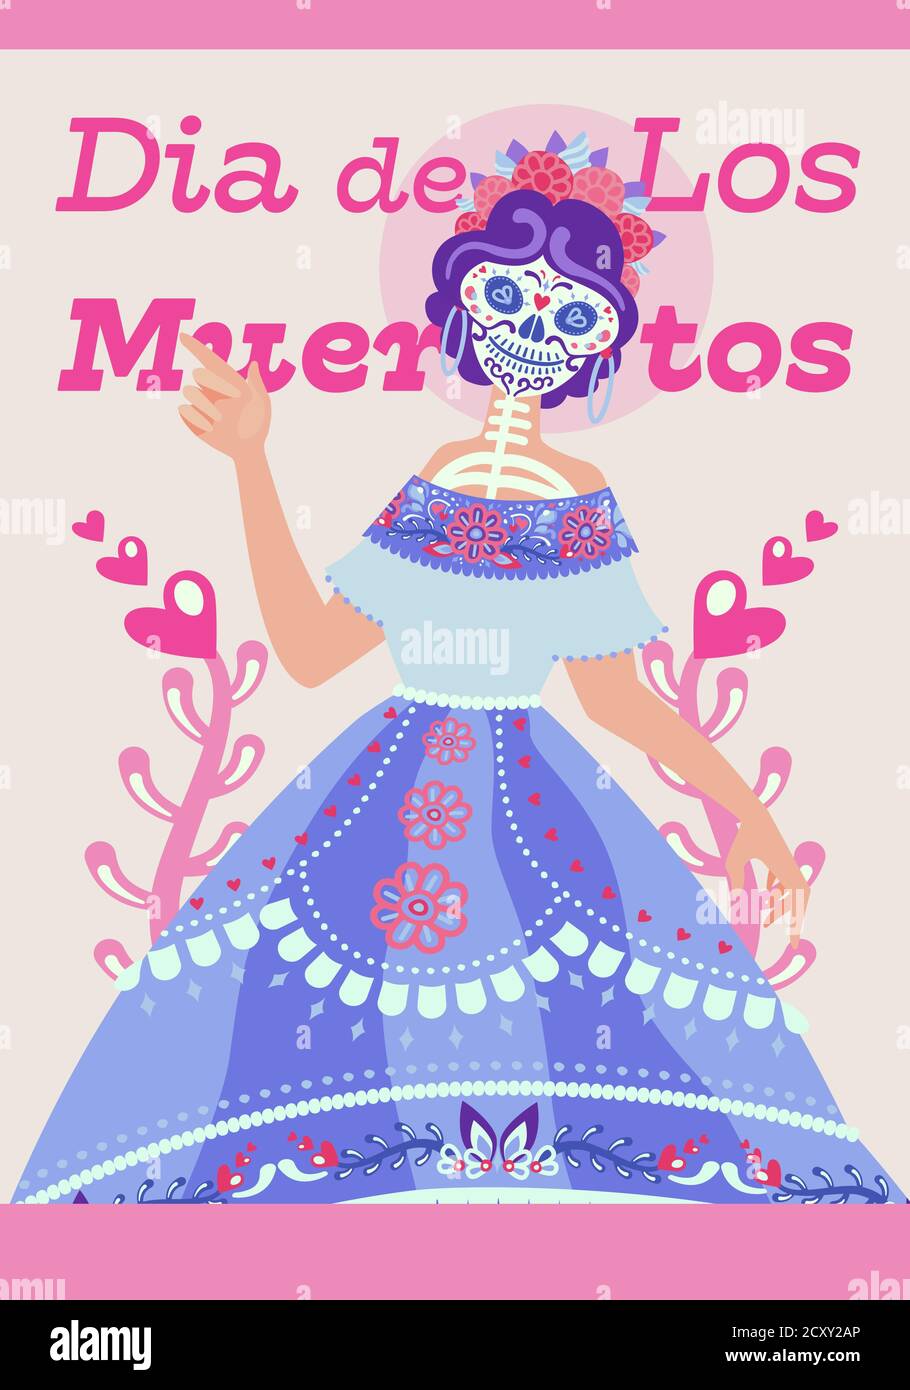 Modernes Layout von Plakat für Tag der Toten. Nette mexikanische Skelett Frau Charakter Catrina, Zucker-Palette Stock Vektor